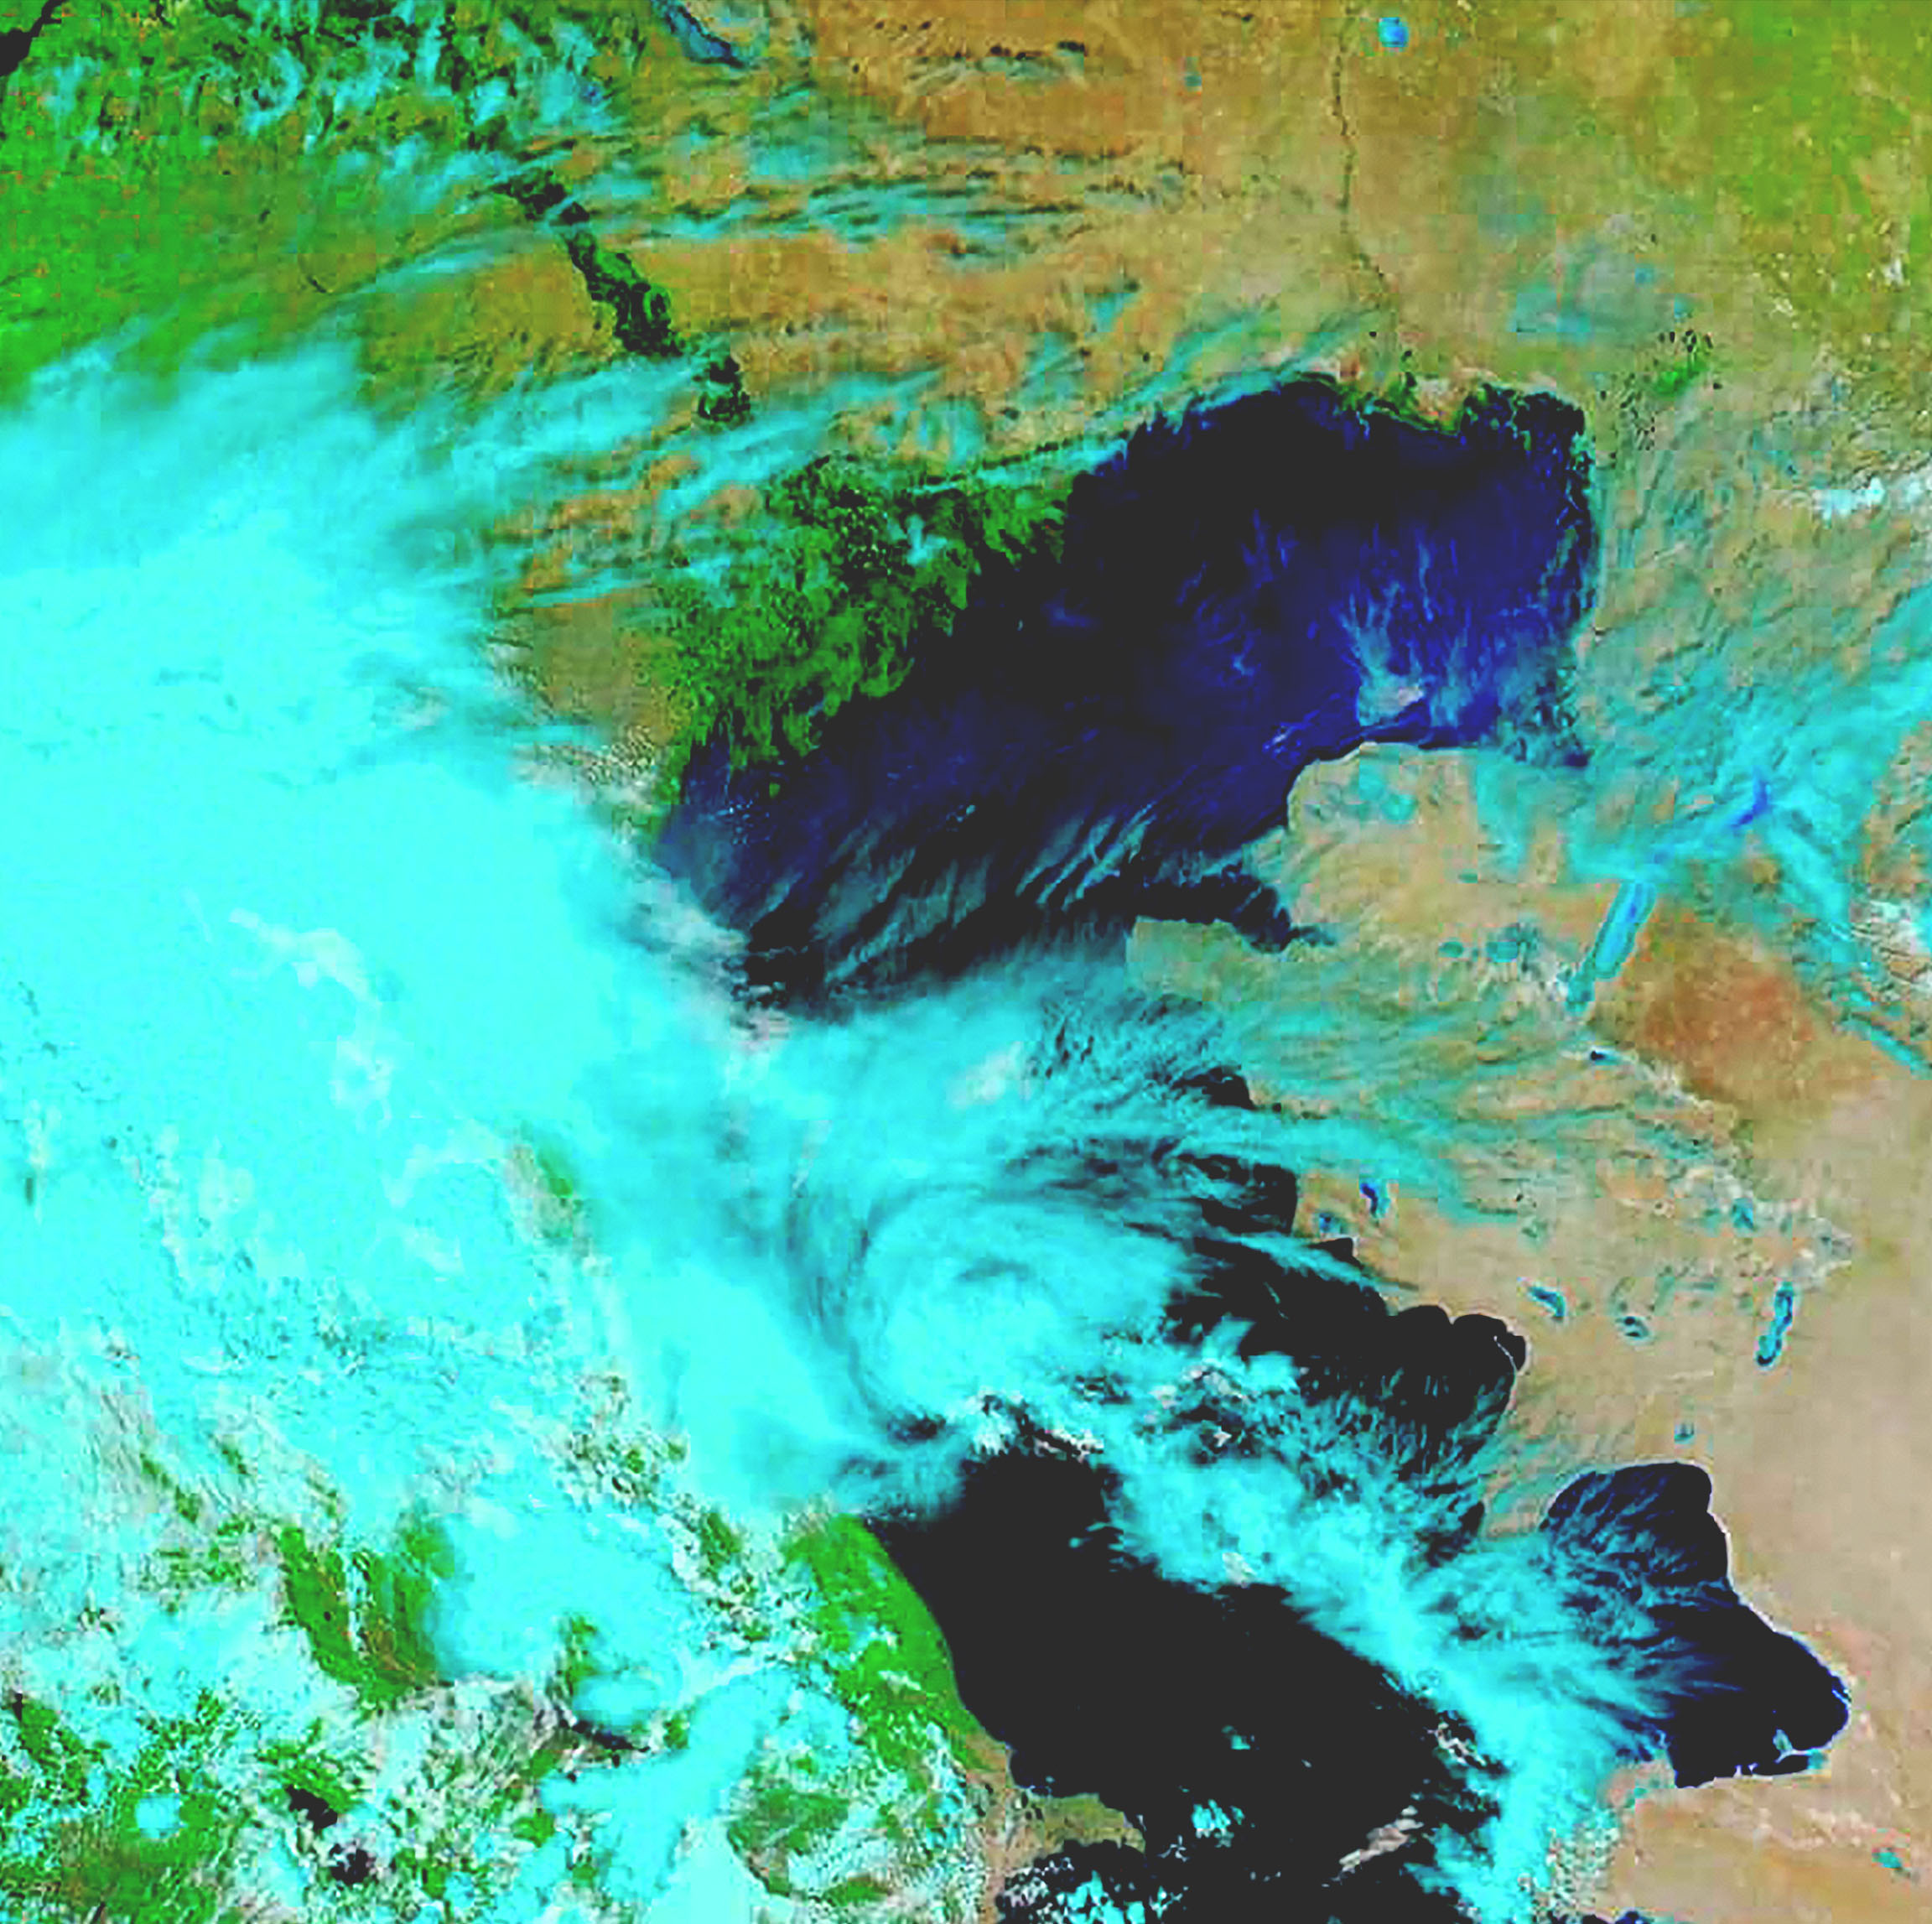 Ein Fernerkundungssatellitenbild zeigt Sensordaten in Blau-, Grün- und Braunabstufungen.